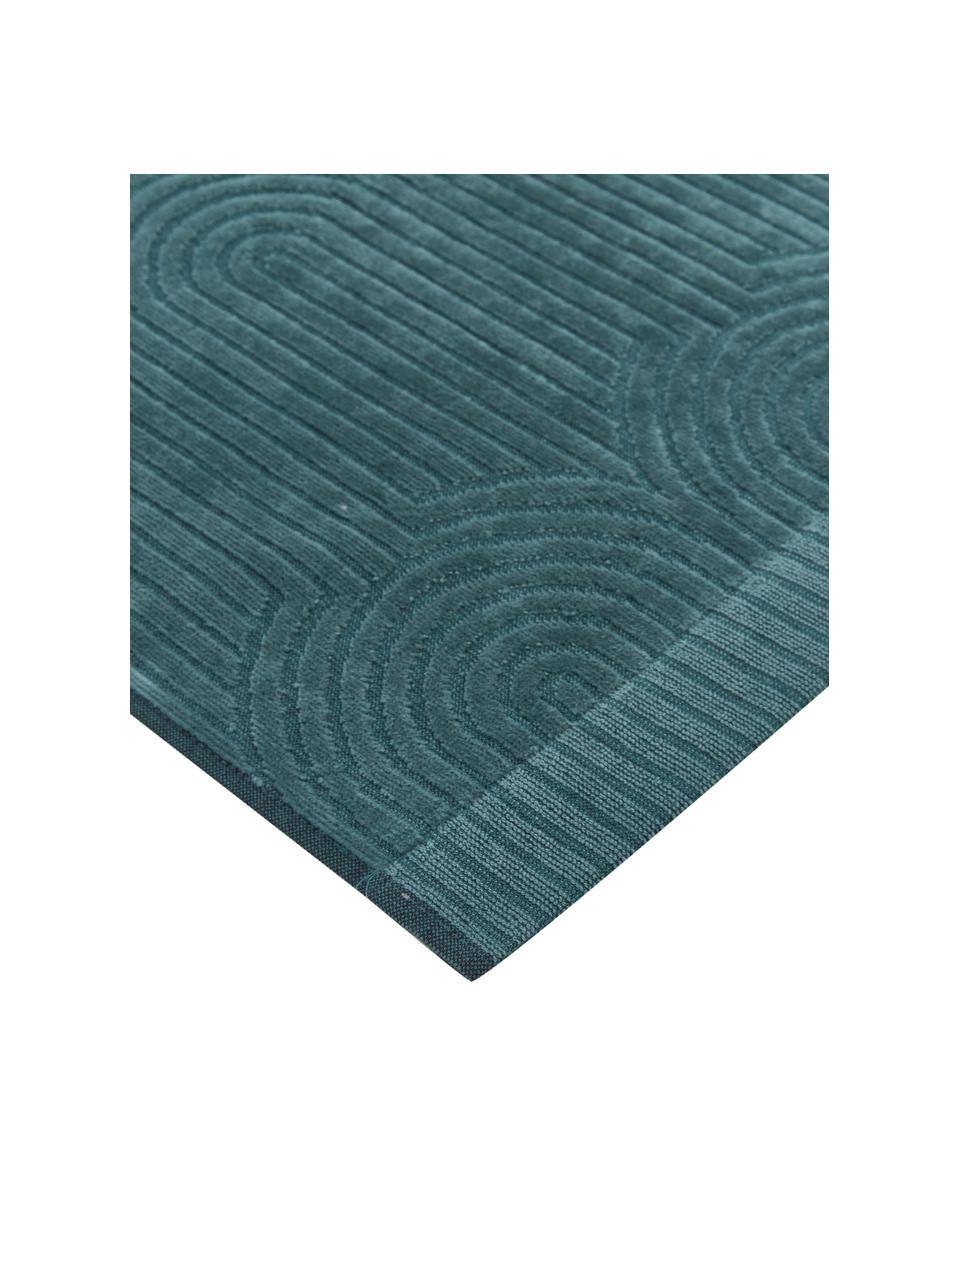 Handtuch Janet in verschiedenen Größen, mit grafischem Reliefmuster, 100% Baumwolle, BCI-zertifiziert, Smaragdgrün, Handtuch, B 50 x L 70 cm